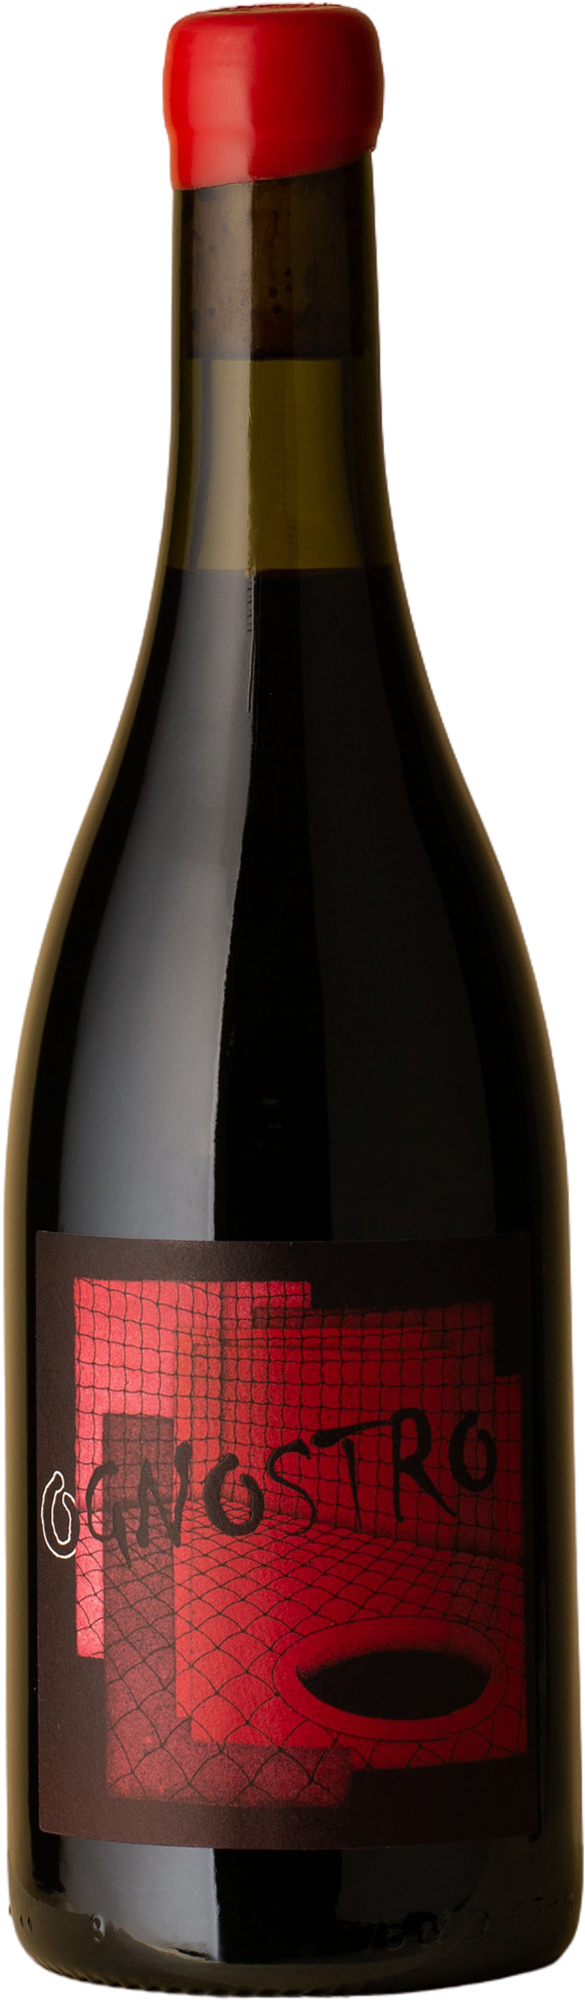 Ognostro - Rosso Aglianico 2017 Red Wine